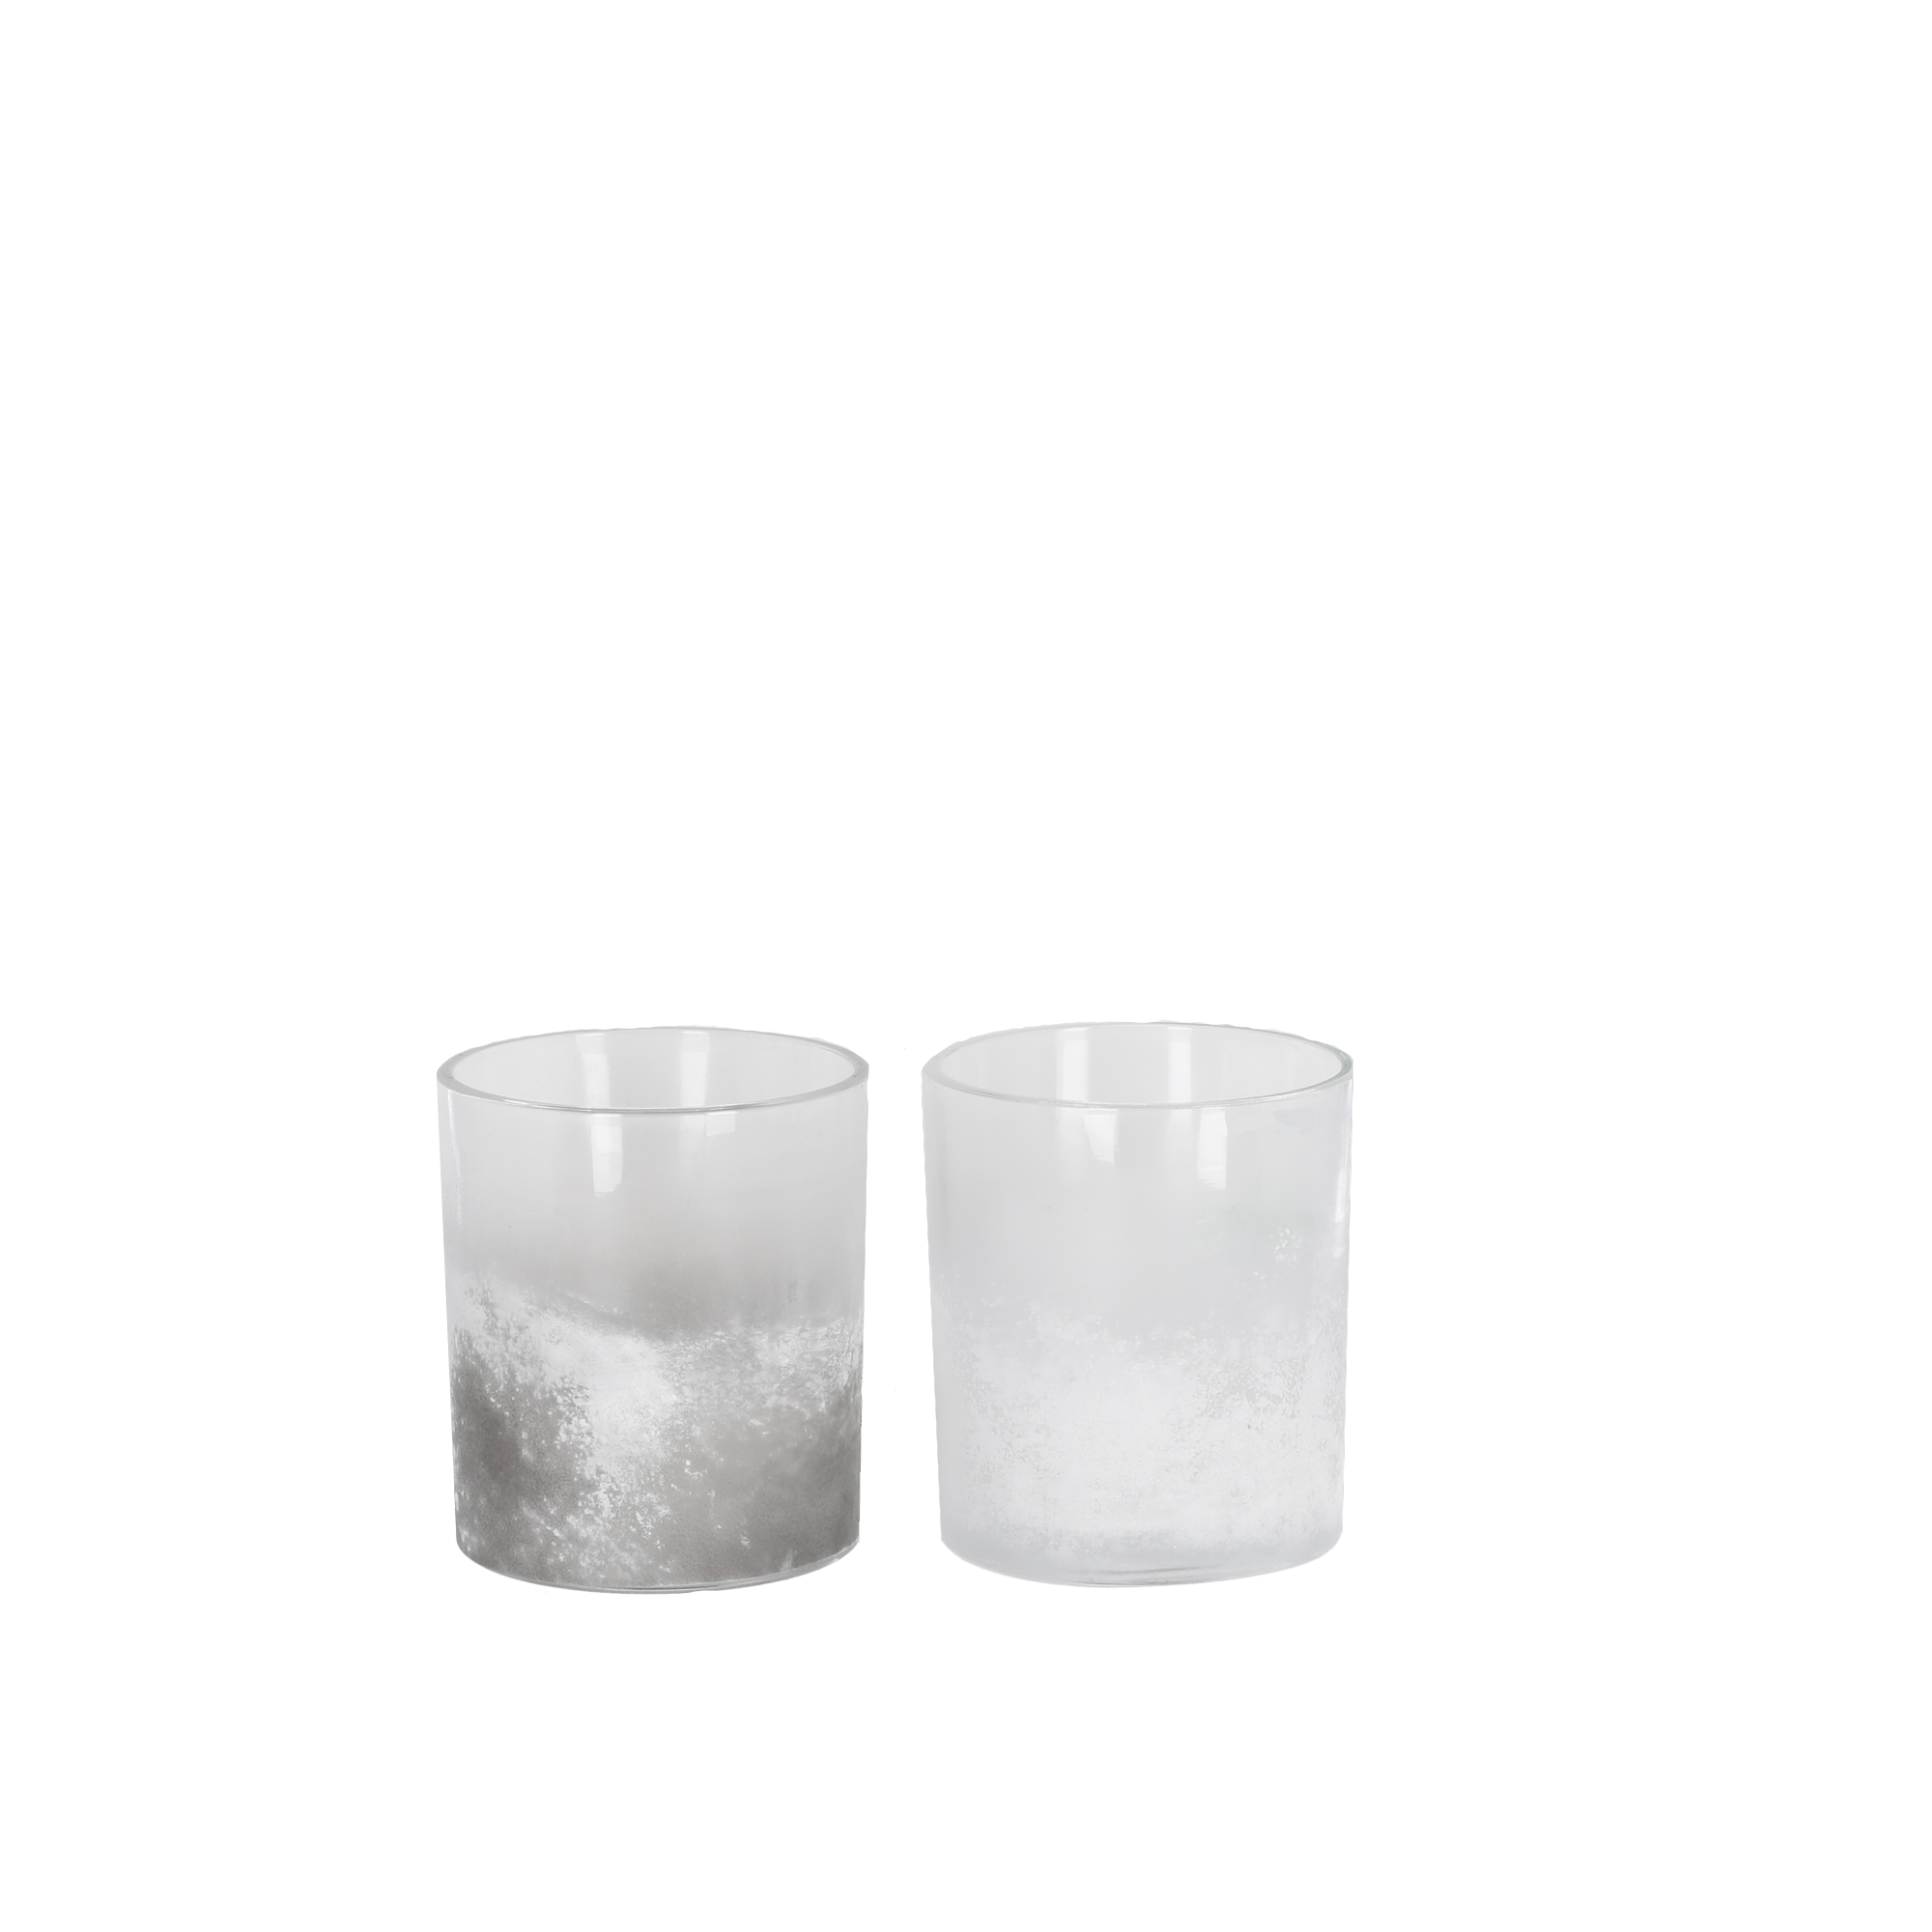 Teelichthalter weiß/grau gefrostet 10 cm + product picture